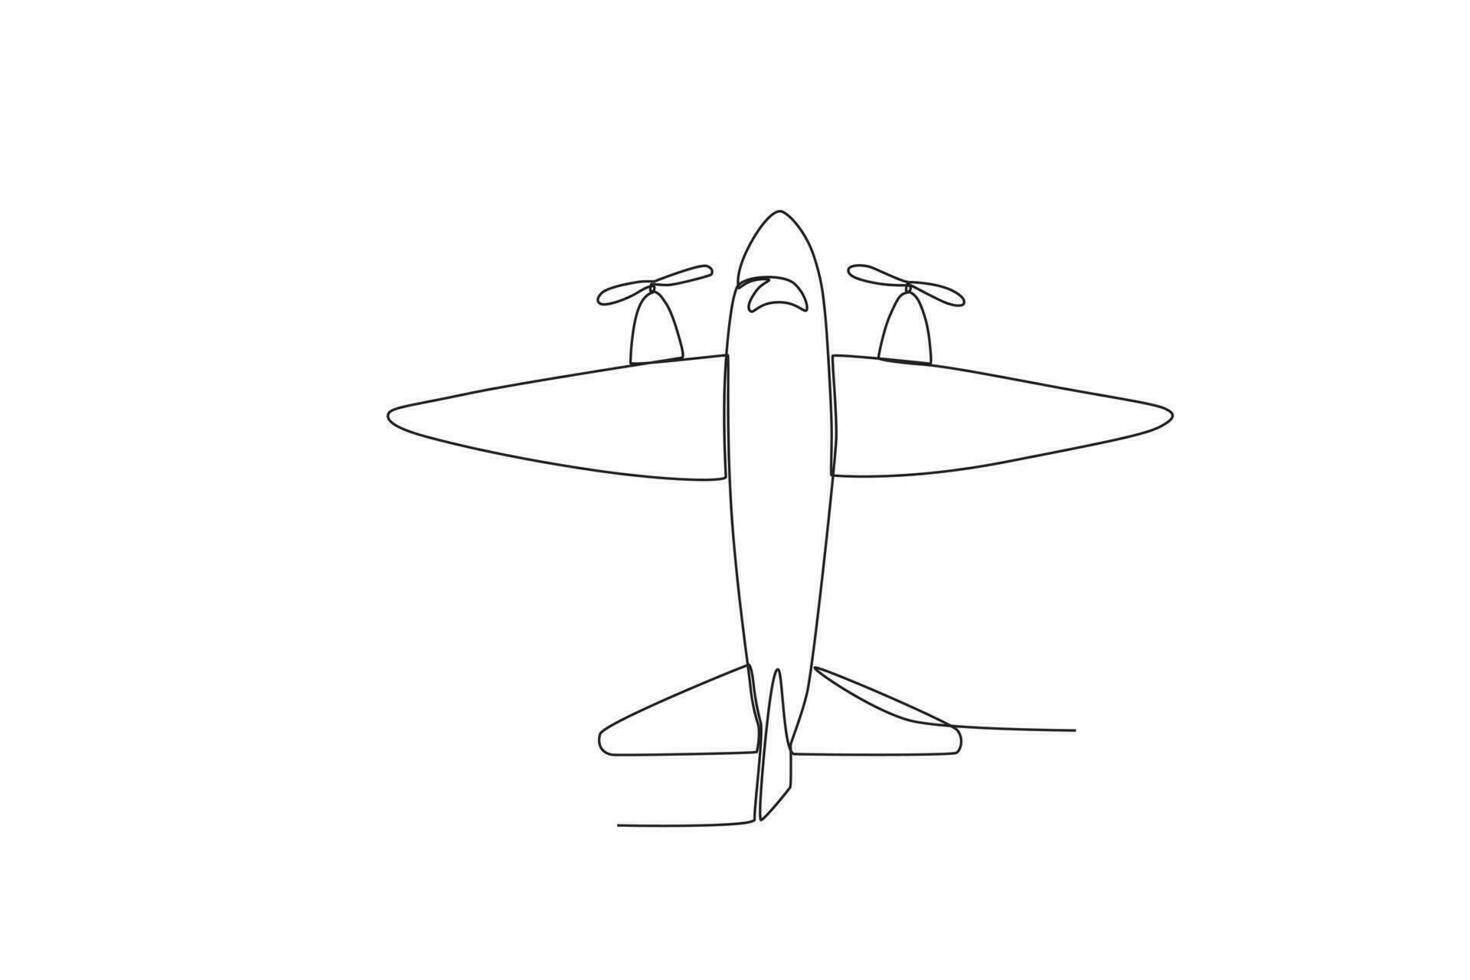 Flugzeug mit zwei Propeller vektor